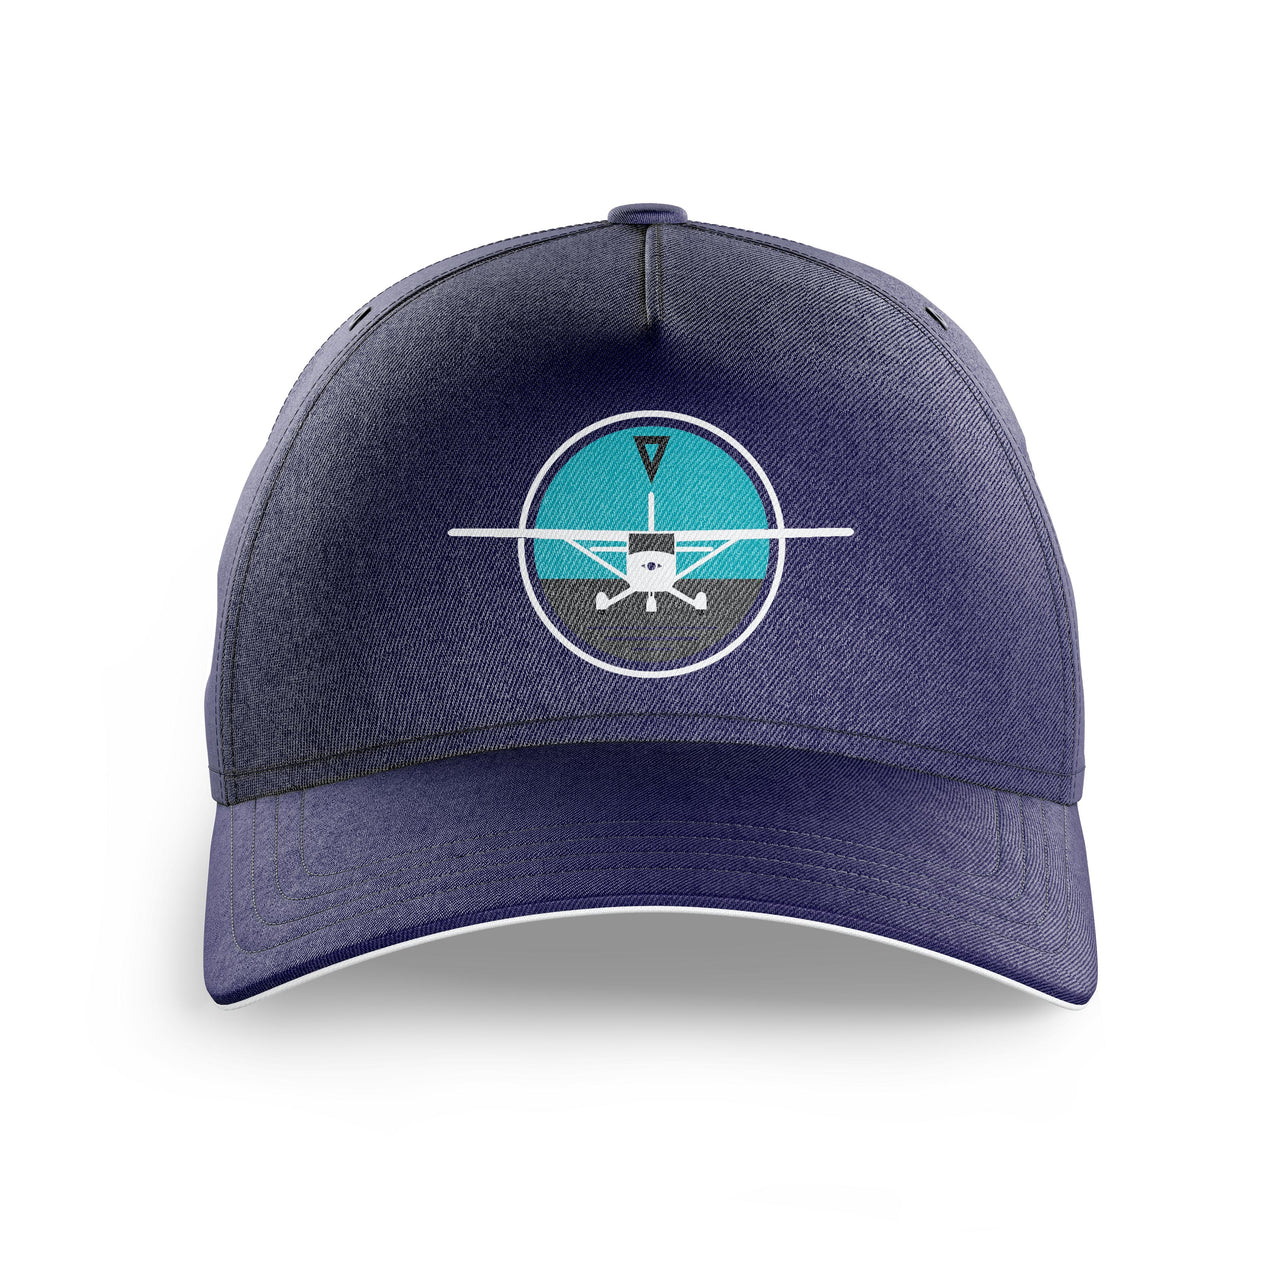 Cessna & Gyro Printed Hats